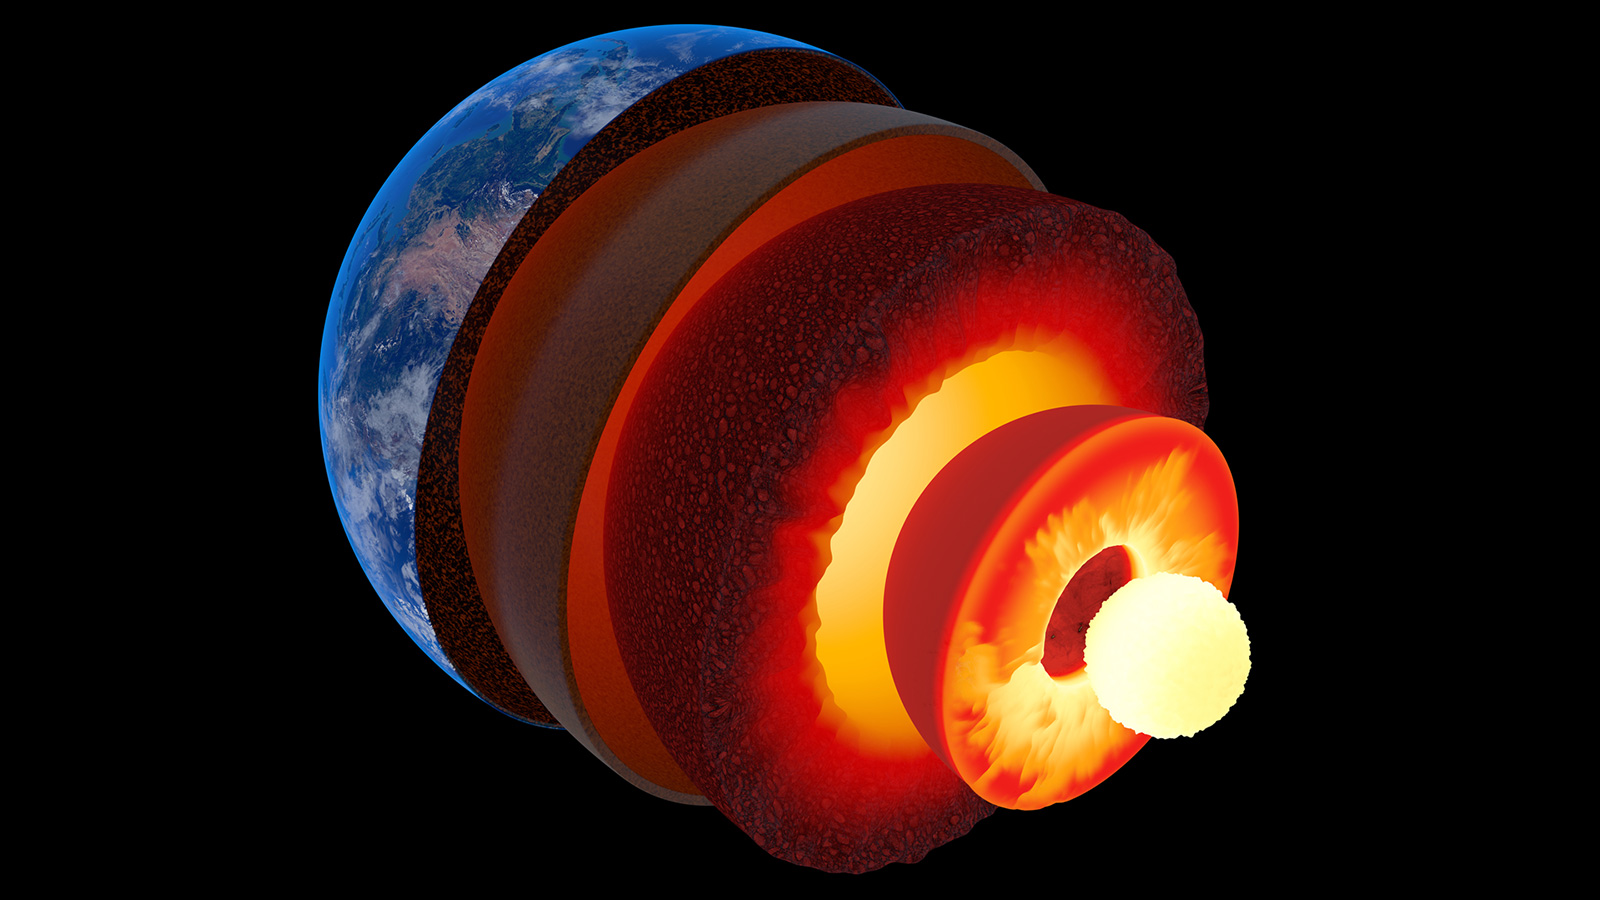 ‪أحدث التقديرات العلمية ترجح أن عمر النواة الداخلية للأرض يبلغ 565 مليون سنة فقط‬ (غيتي إيميجز)